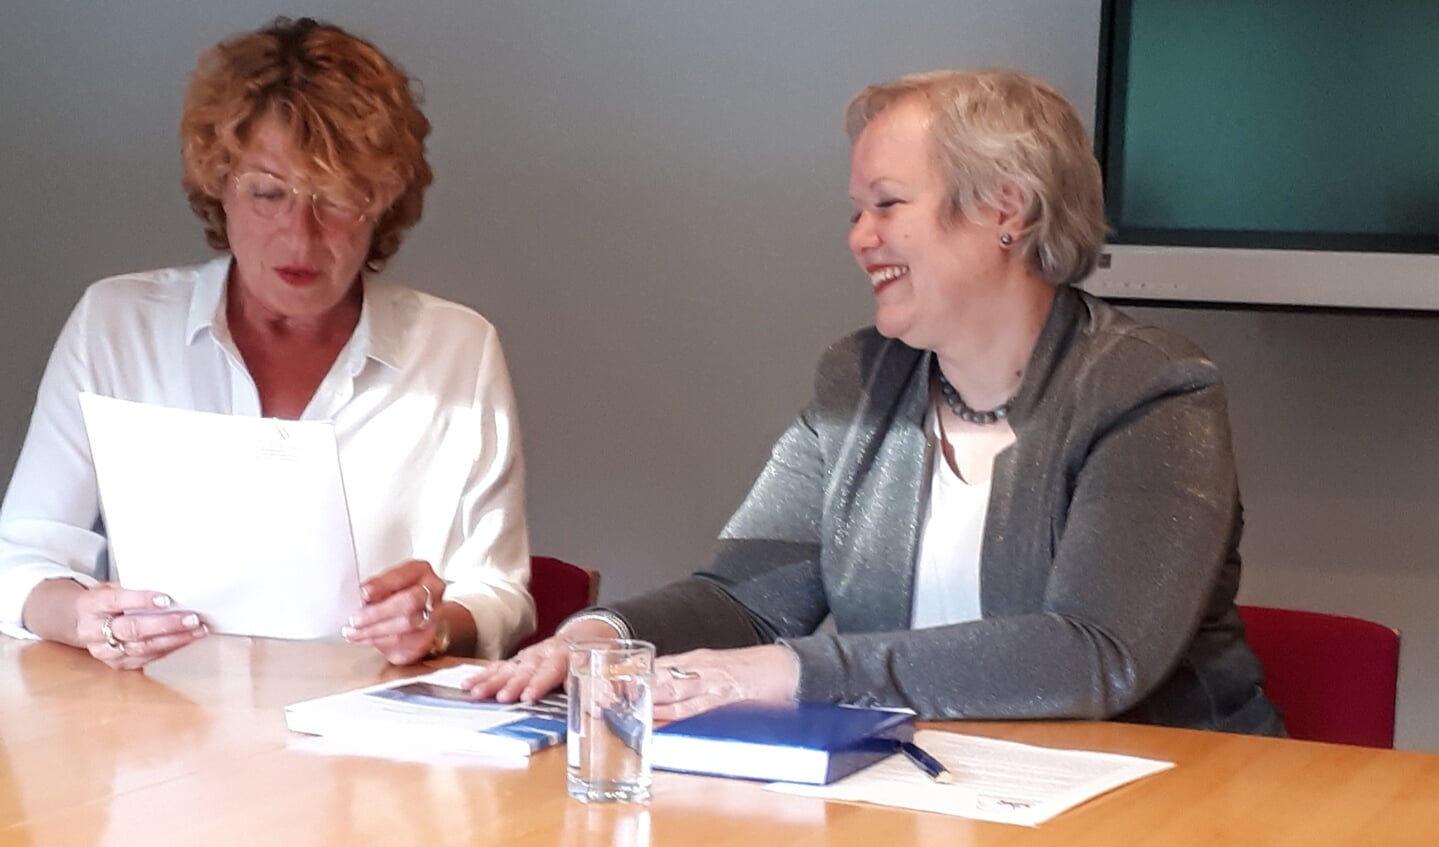 Voorzitter Adviesgroep Marion van der Voort (l) overhandigt Karen Heerschop (GNR) het unanieme advies.